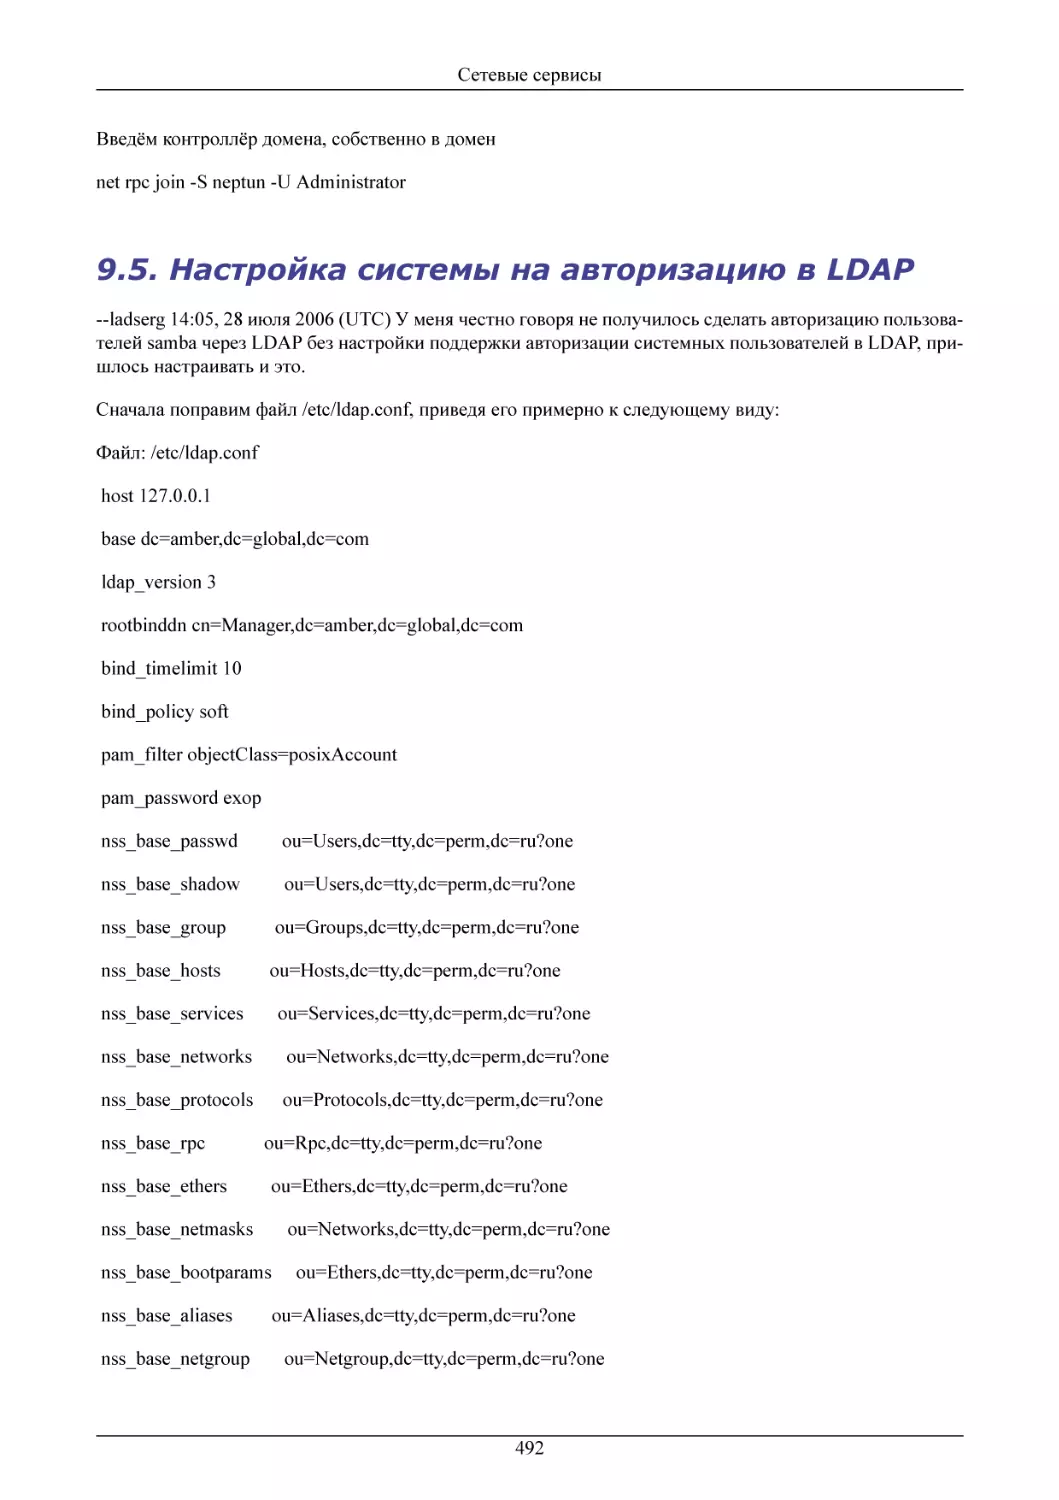 Настройка системы на авторизацию в LDAP